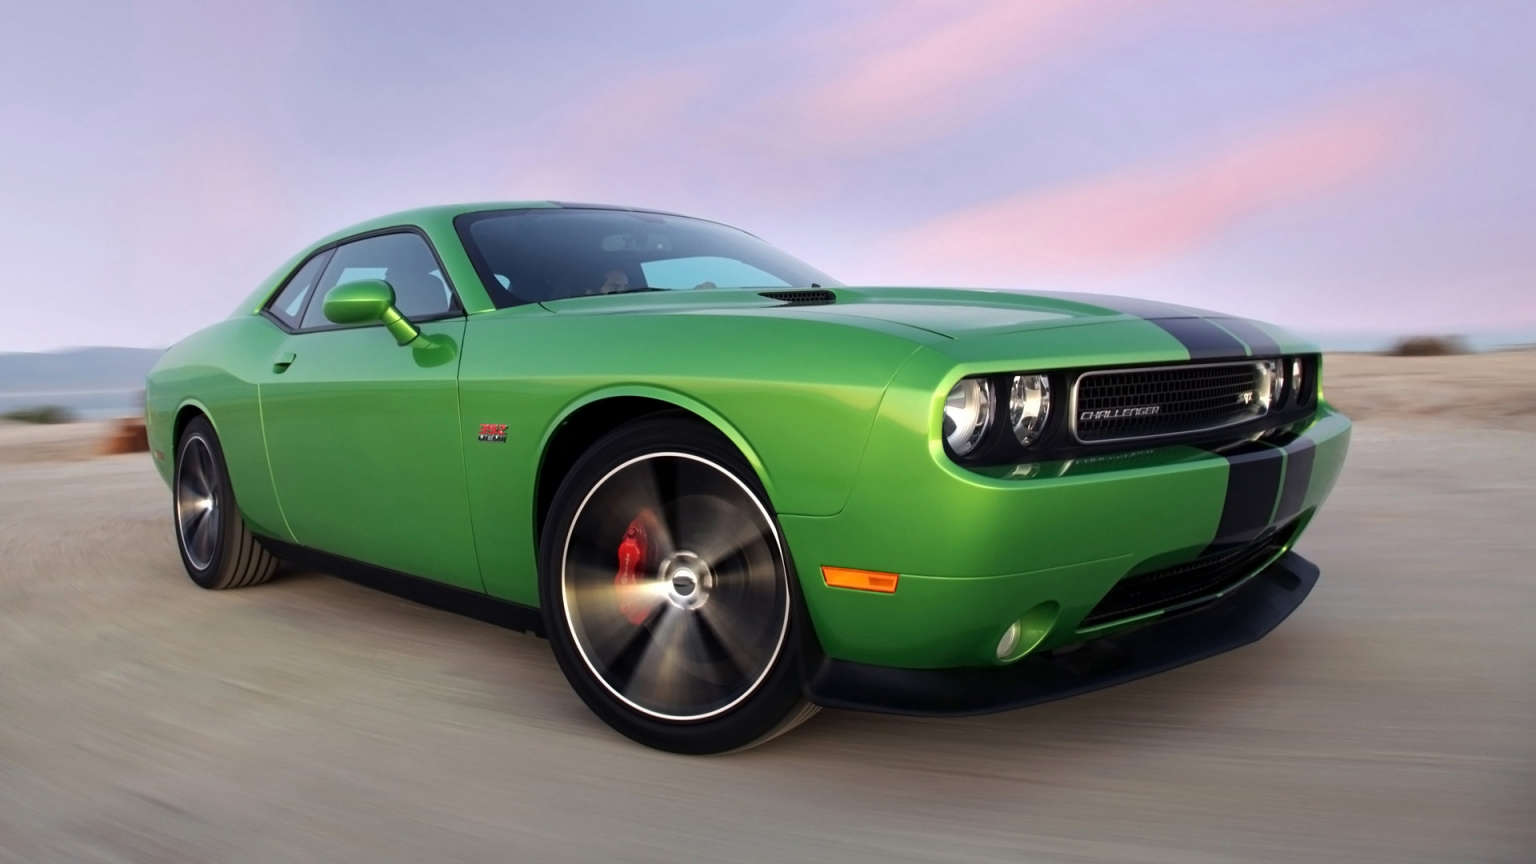 2011 Dodge Challenger Green for 1536 x 864 HDTV resolution